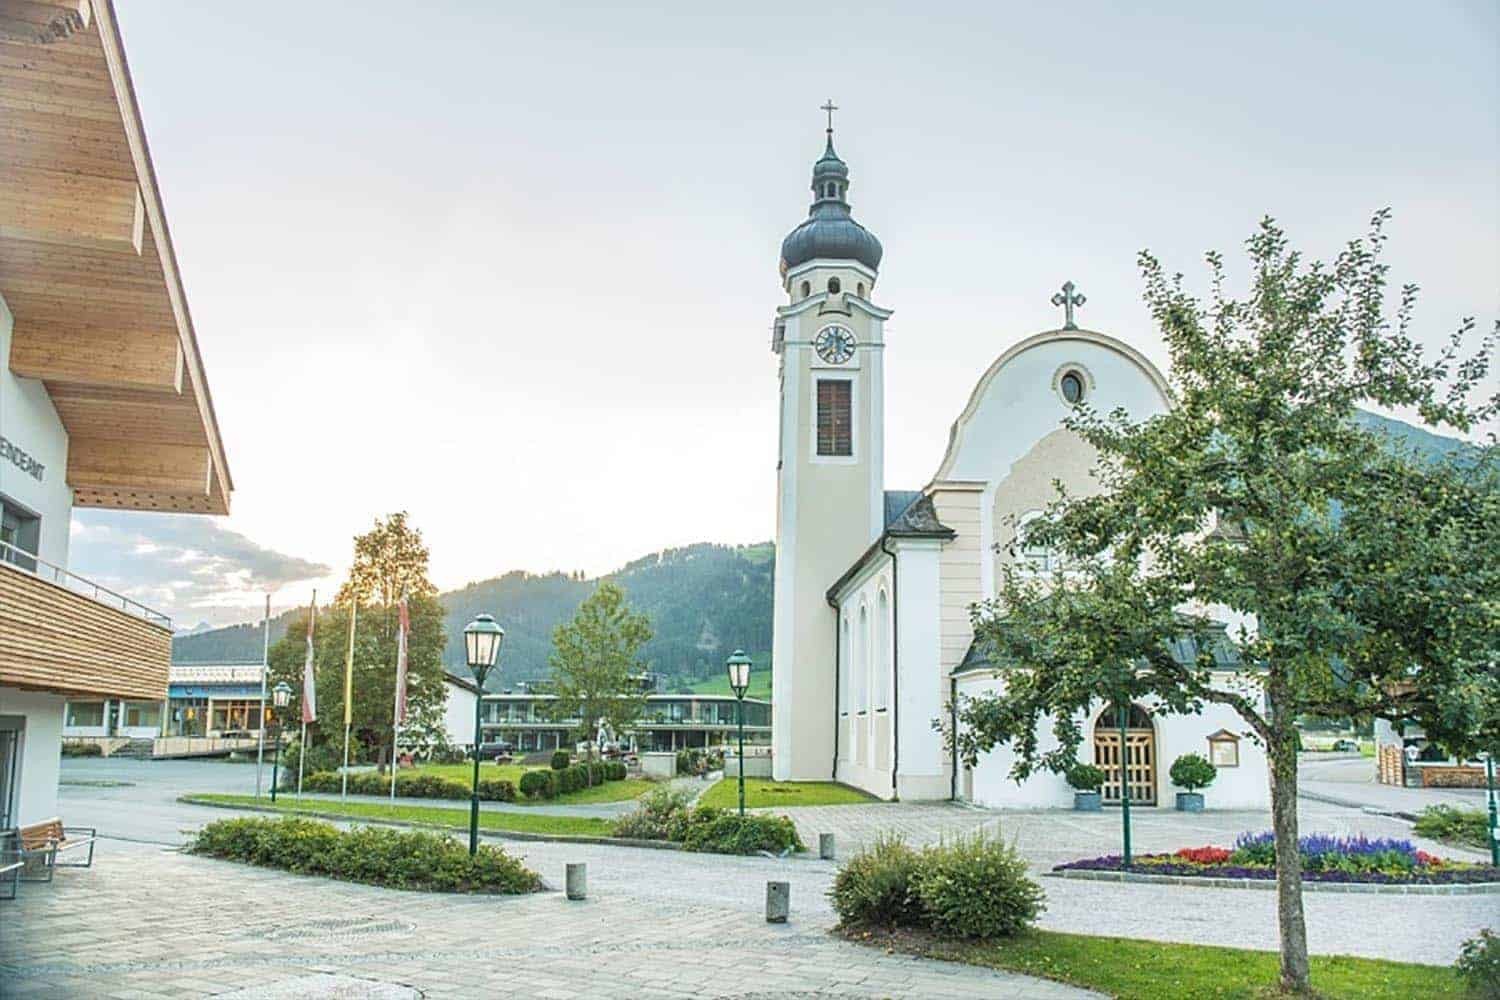 Gemeindeamt mit Dorfplatz und Pfarrkirche im Hintergrund